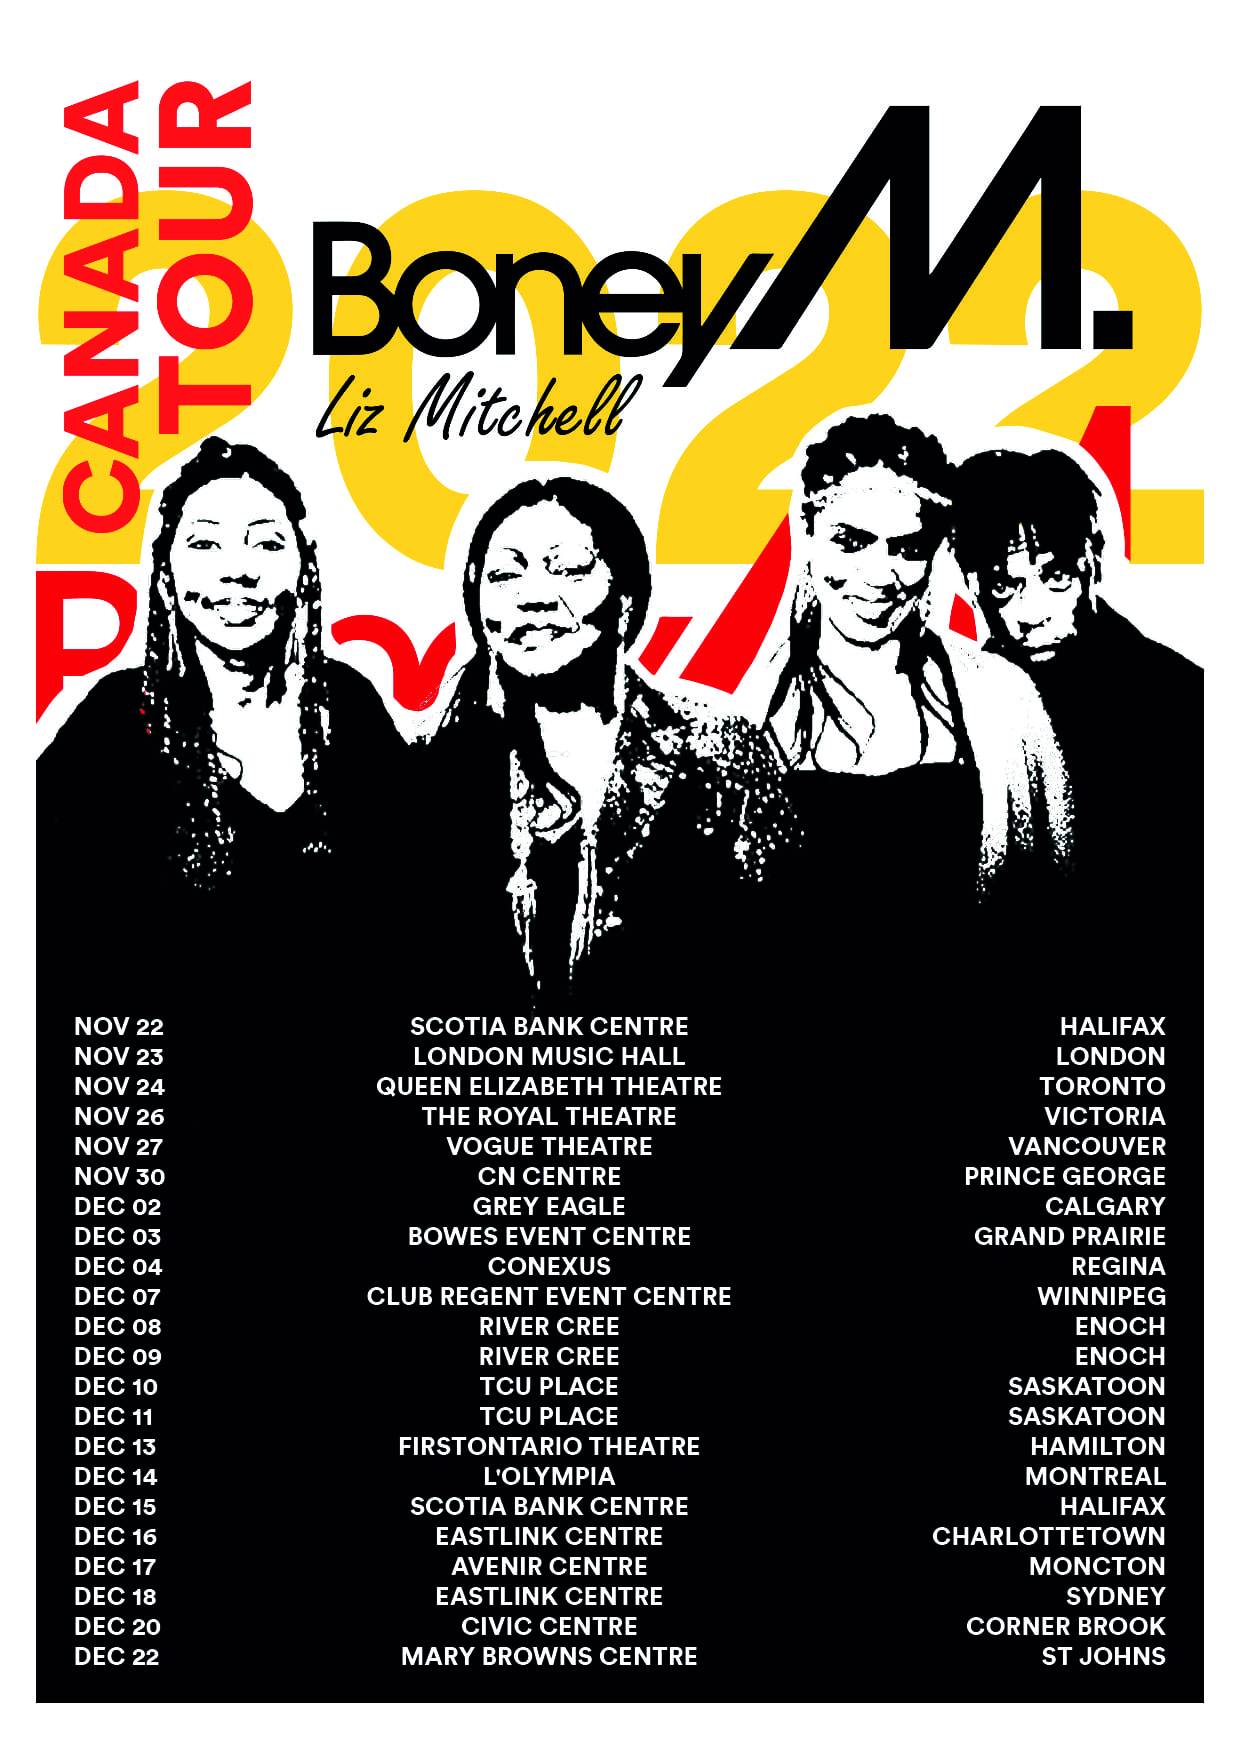 Boney M. on tour in Atlantic Canada